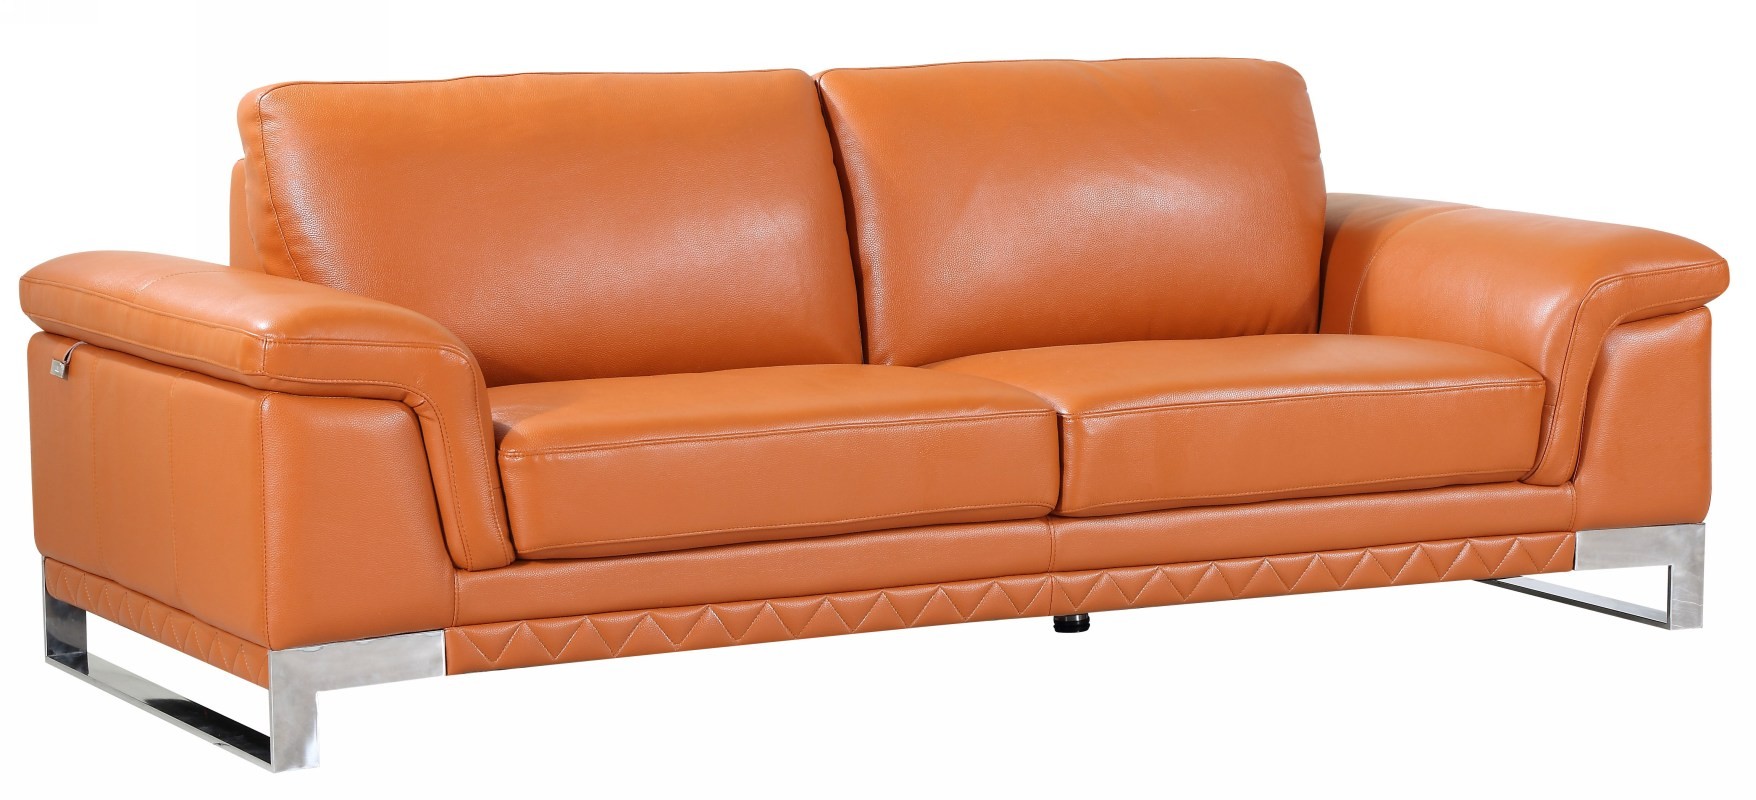 camel faux leather sofa